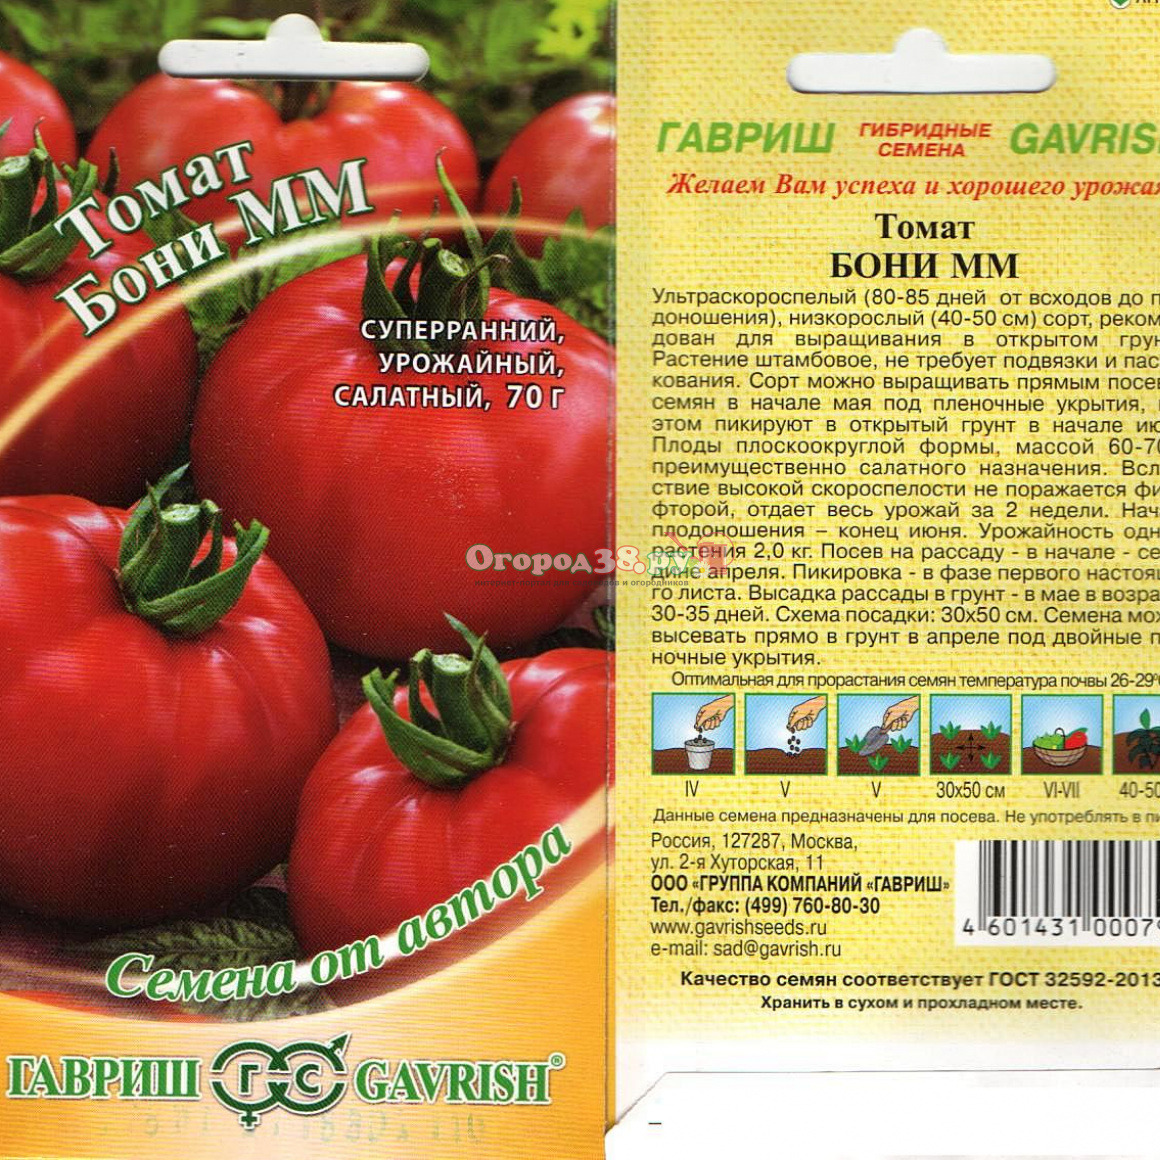 Томат бурковский ранний: характеристика и описание сорта, фото помидоров и отзывы об урожайности растения